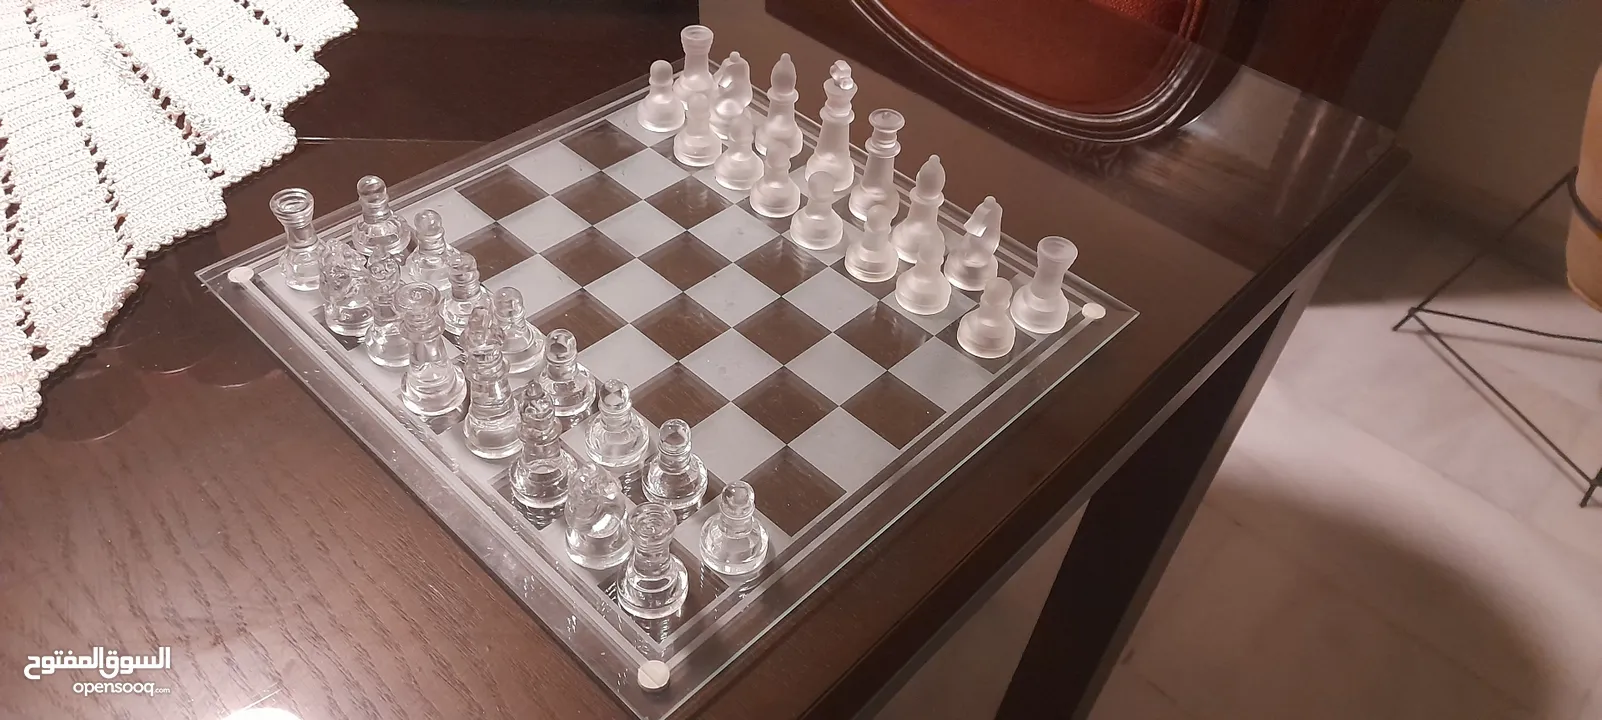 Glass Chess & Checkers  شطرنج و تشيكرز زجاجي